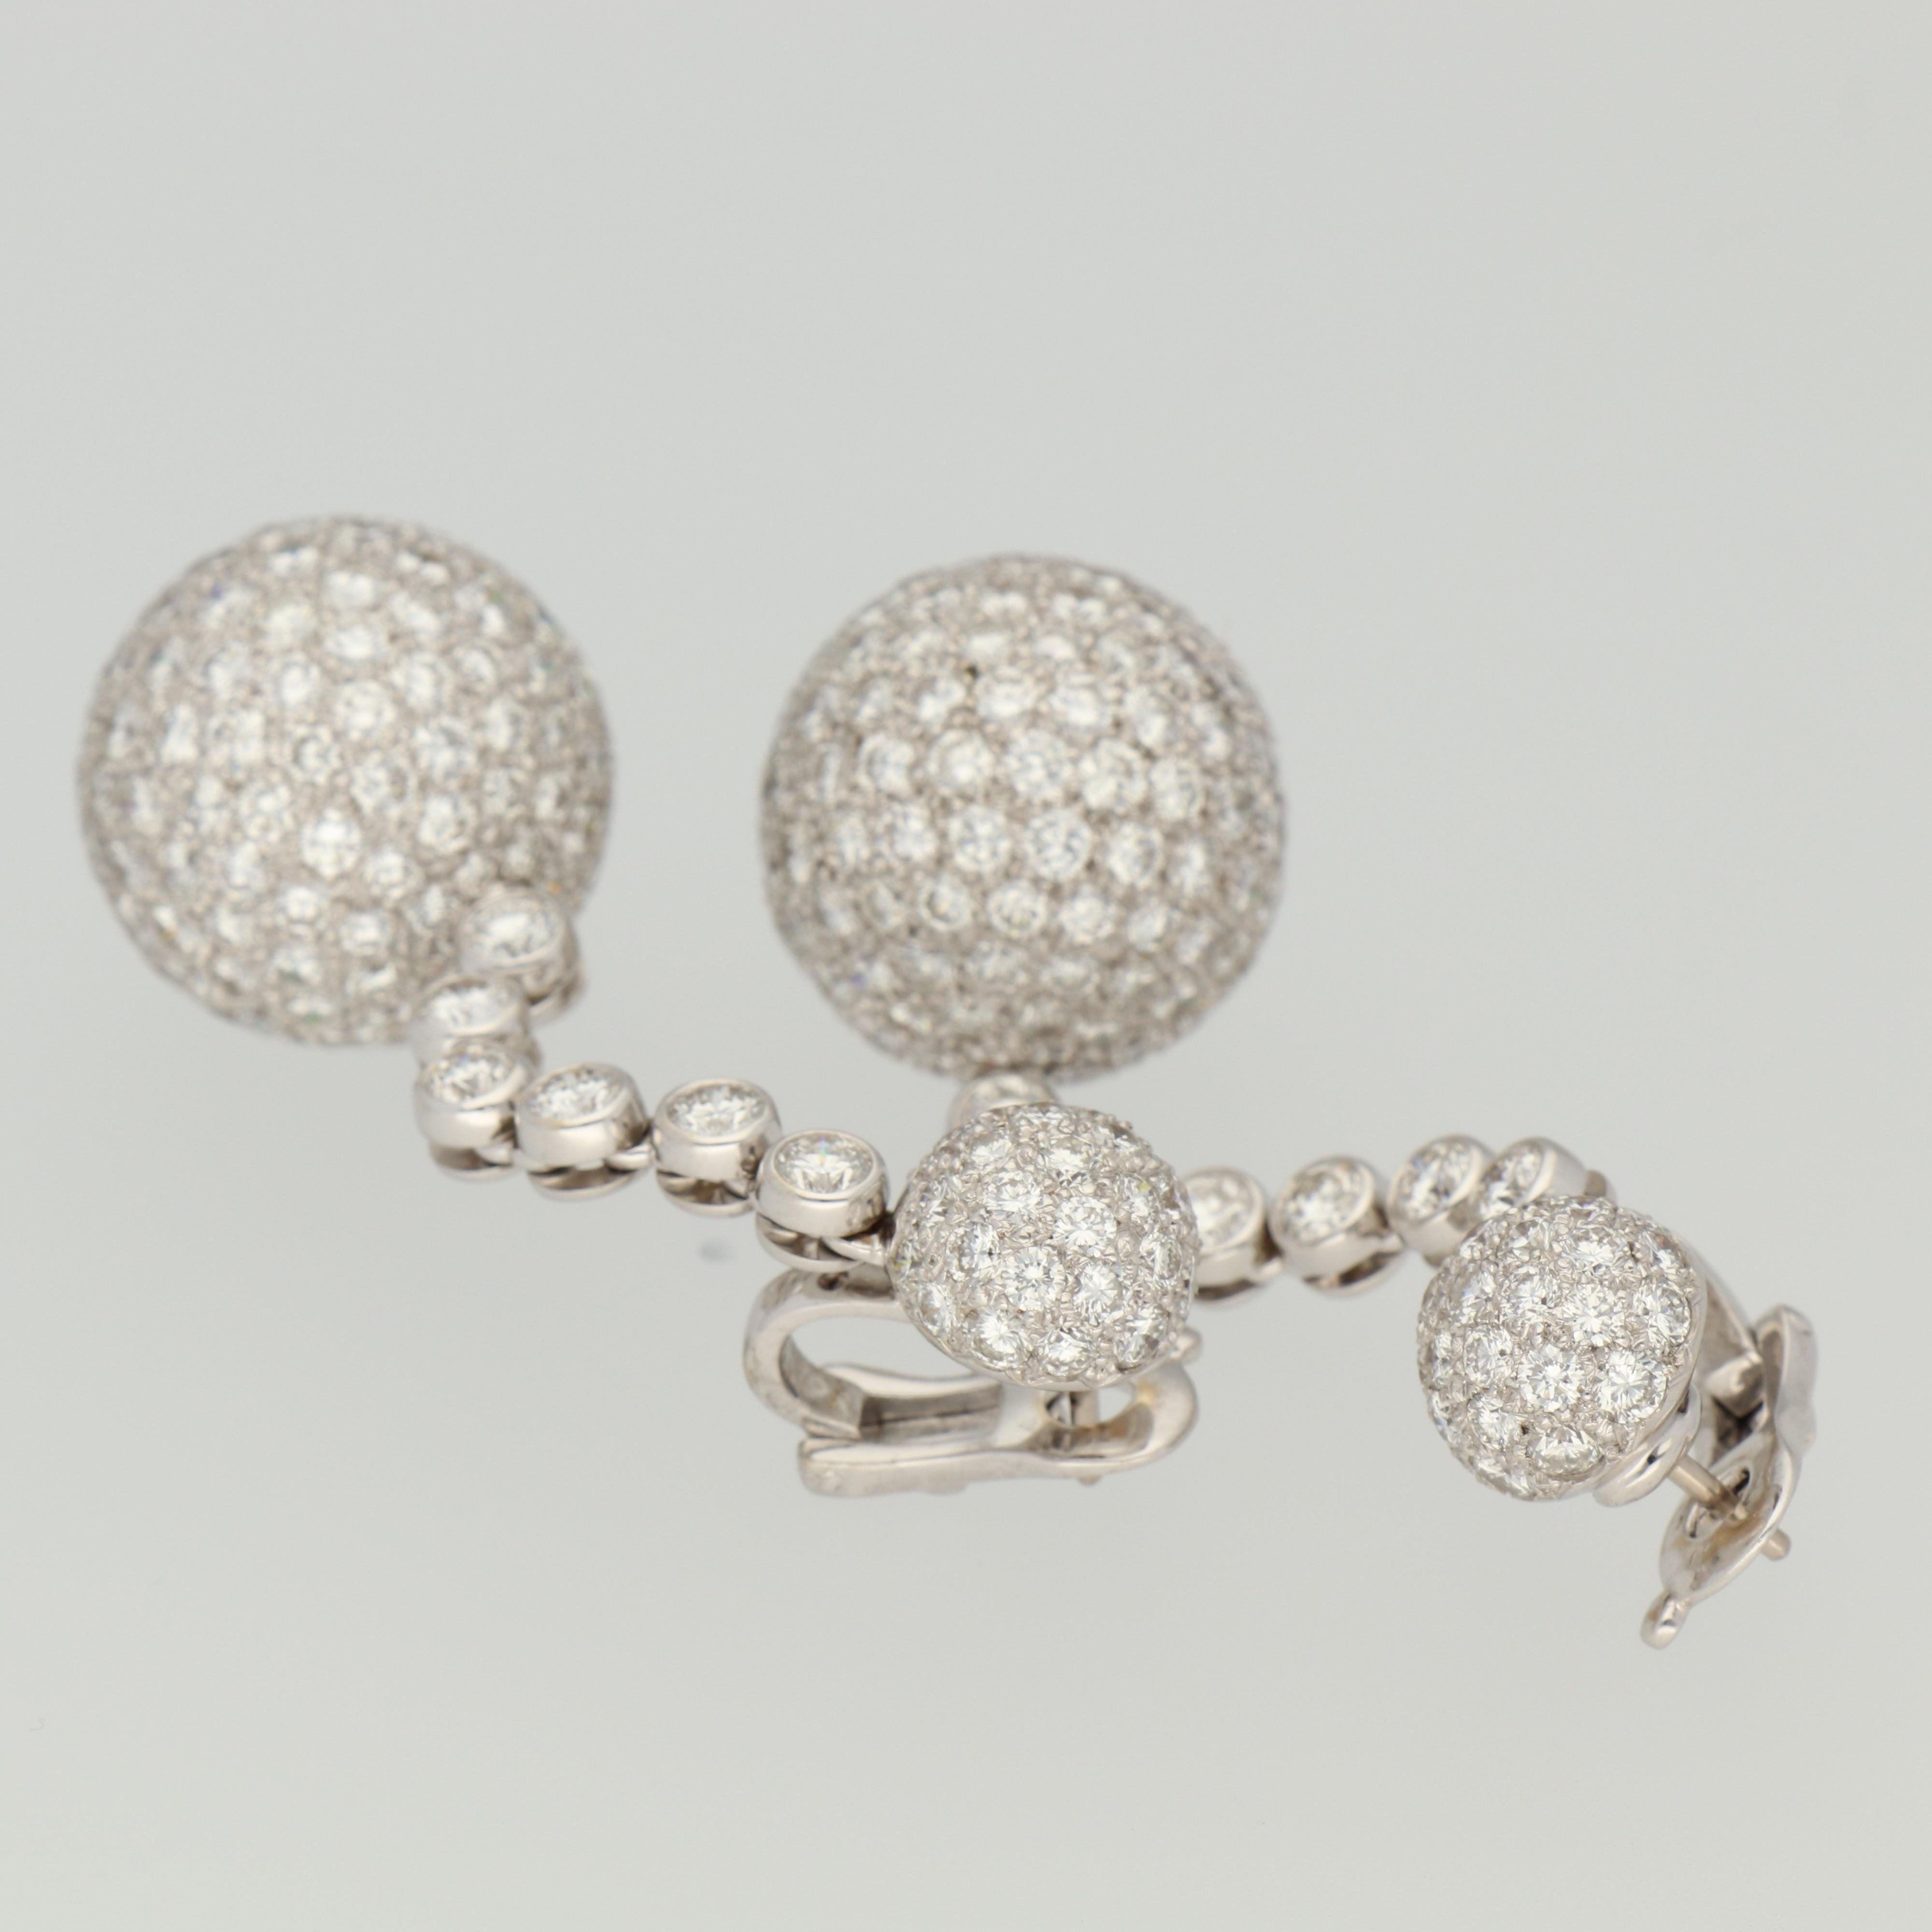 de GRISOGONO 'Boule' Diamonds 27.30 Ct Pavé Gold Earrings In New Condition For Sale In Andorra la Vella, AD